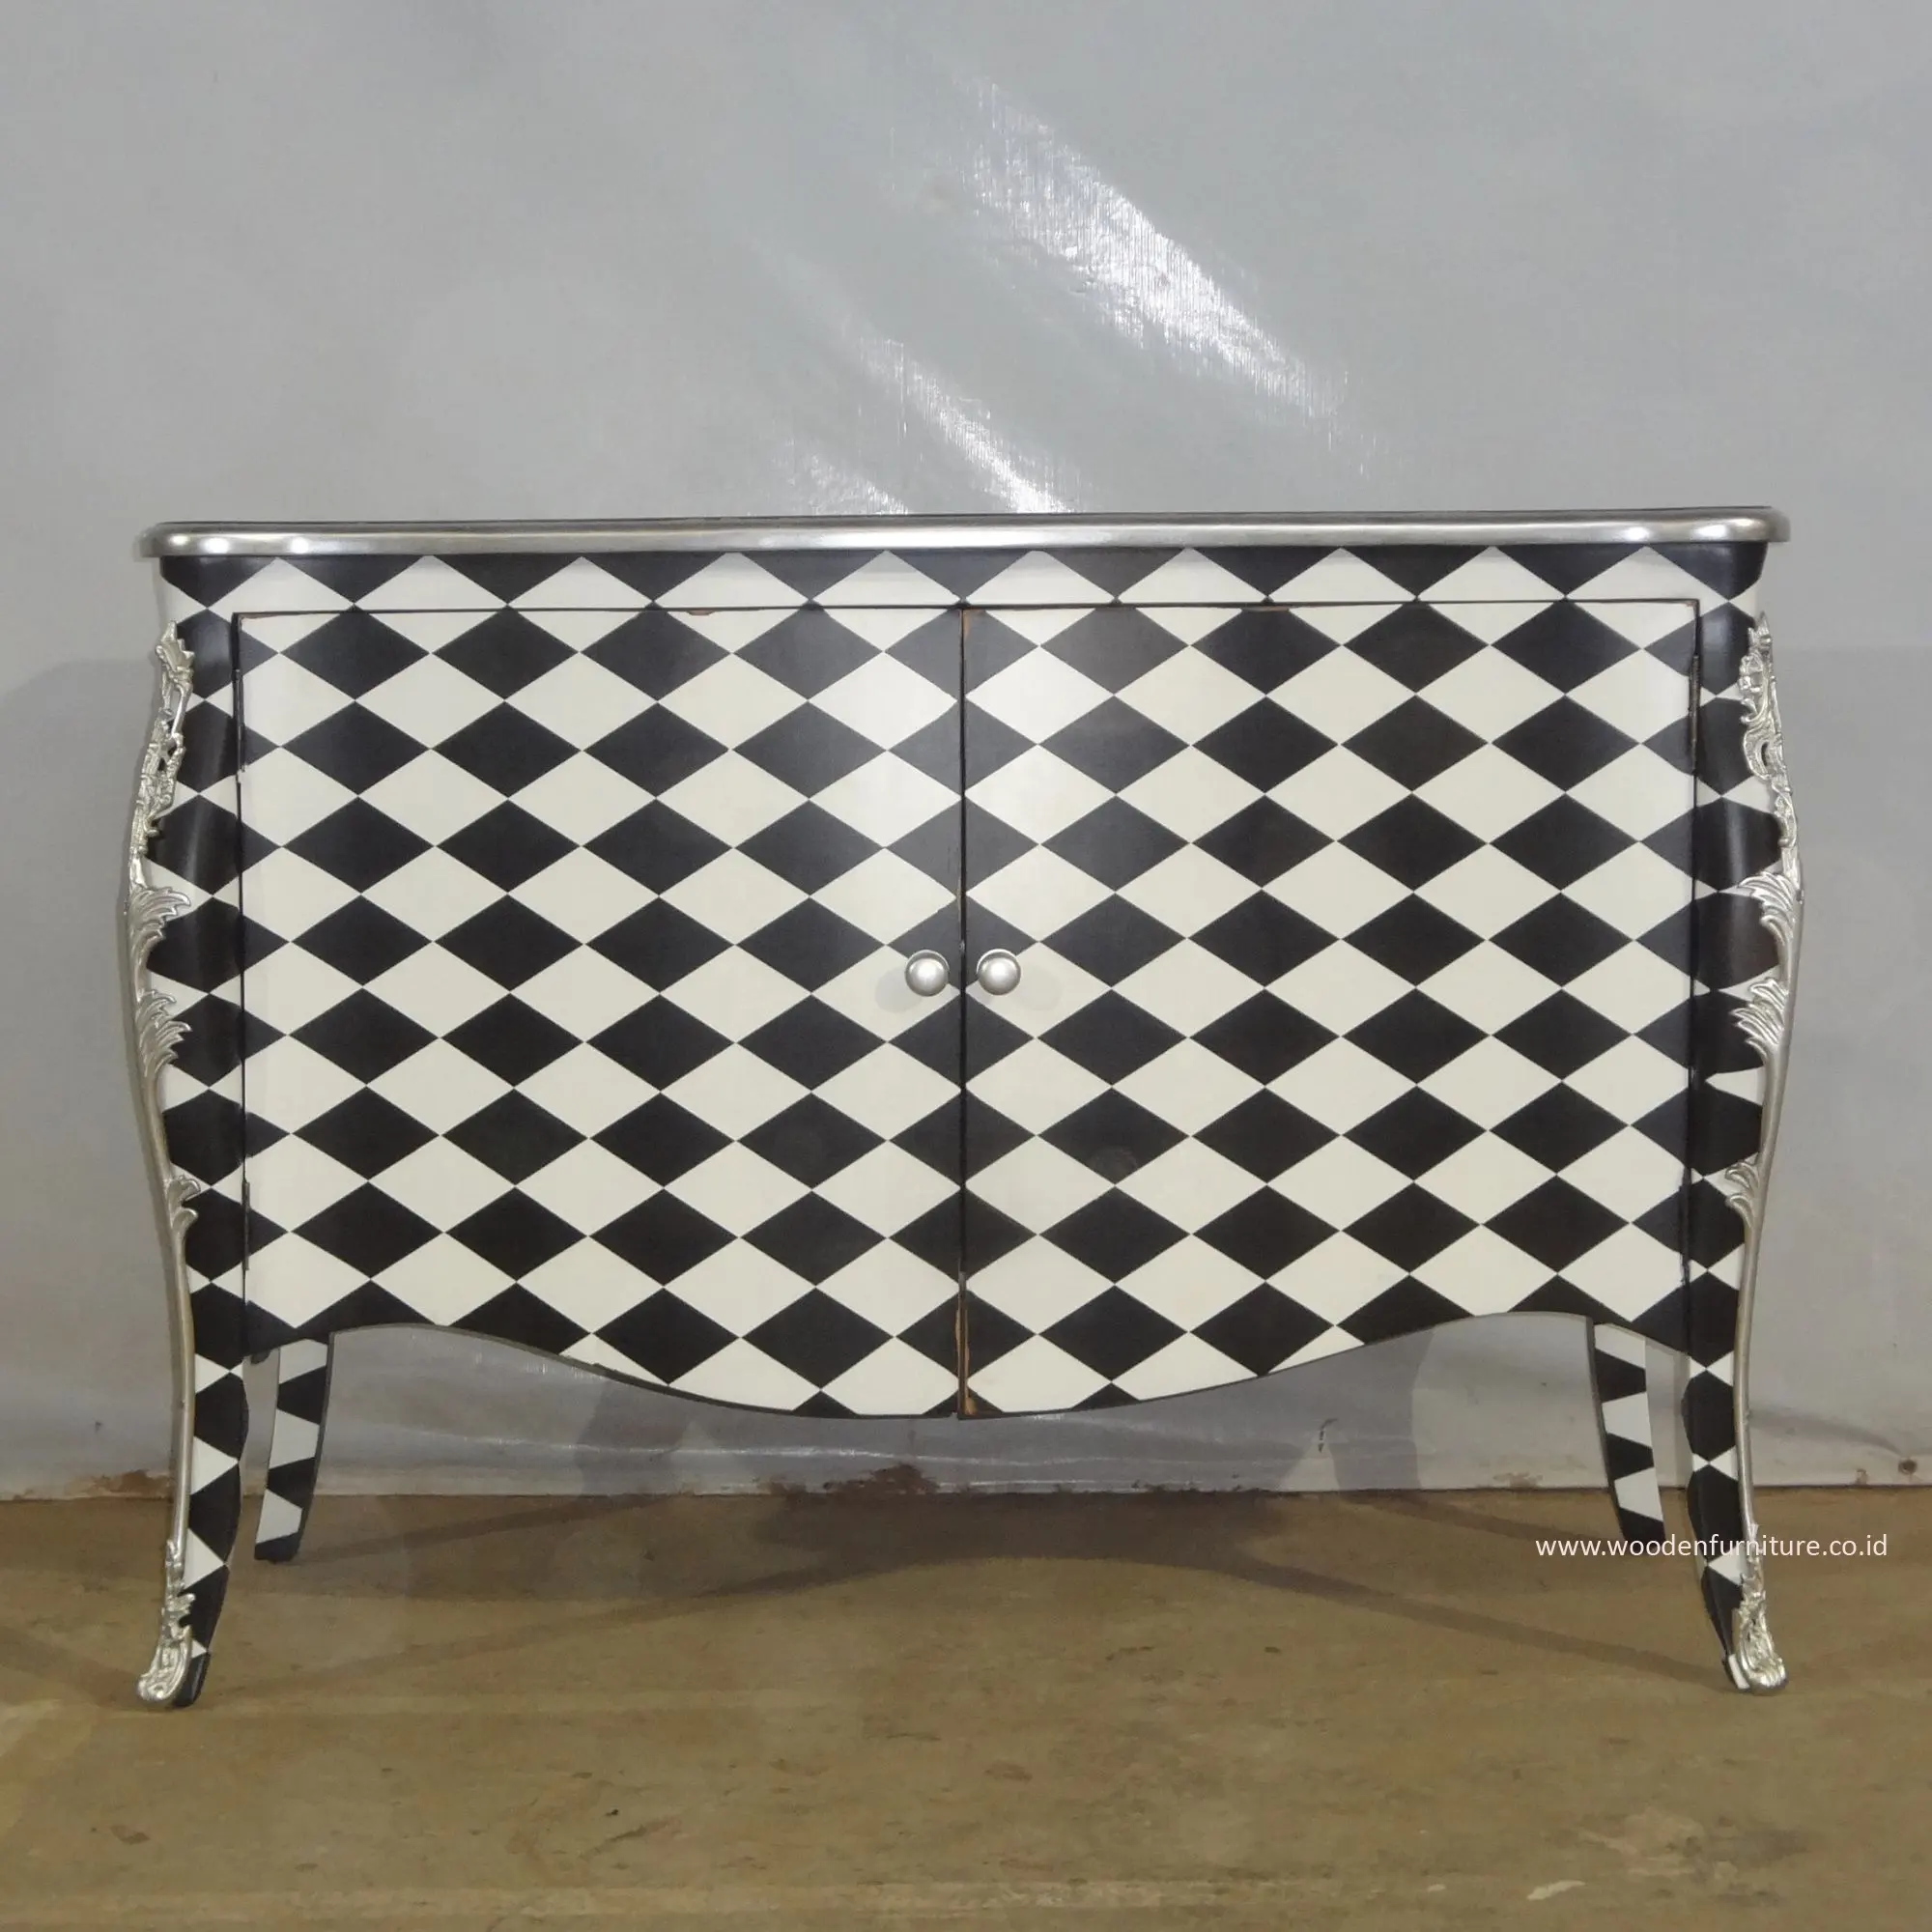 Holz buffet in Schwarz-Weiß-Checker Painted Funktion als Side board Küchen schrank für die Einrichtung von Möbeln im französischen Stil